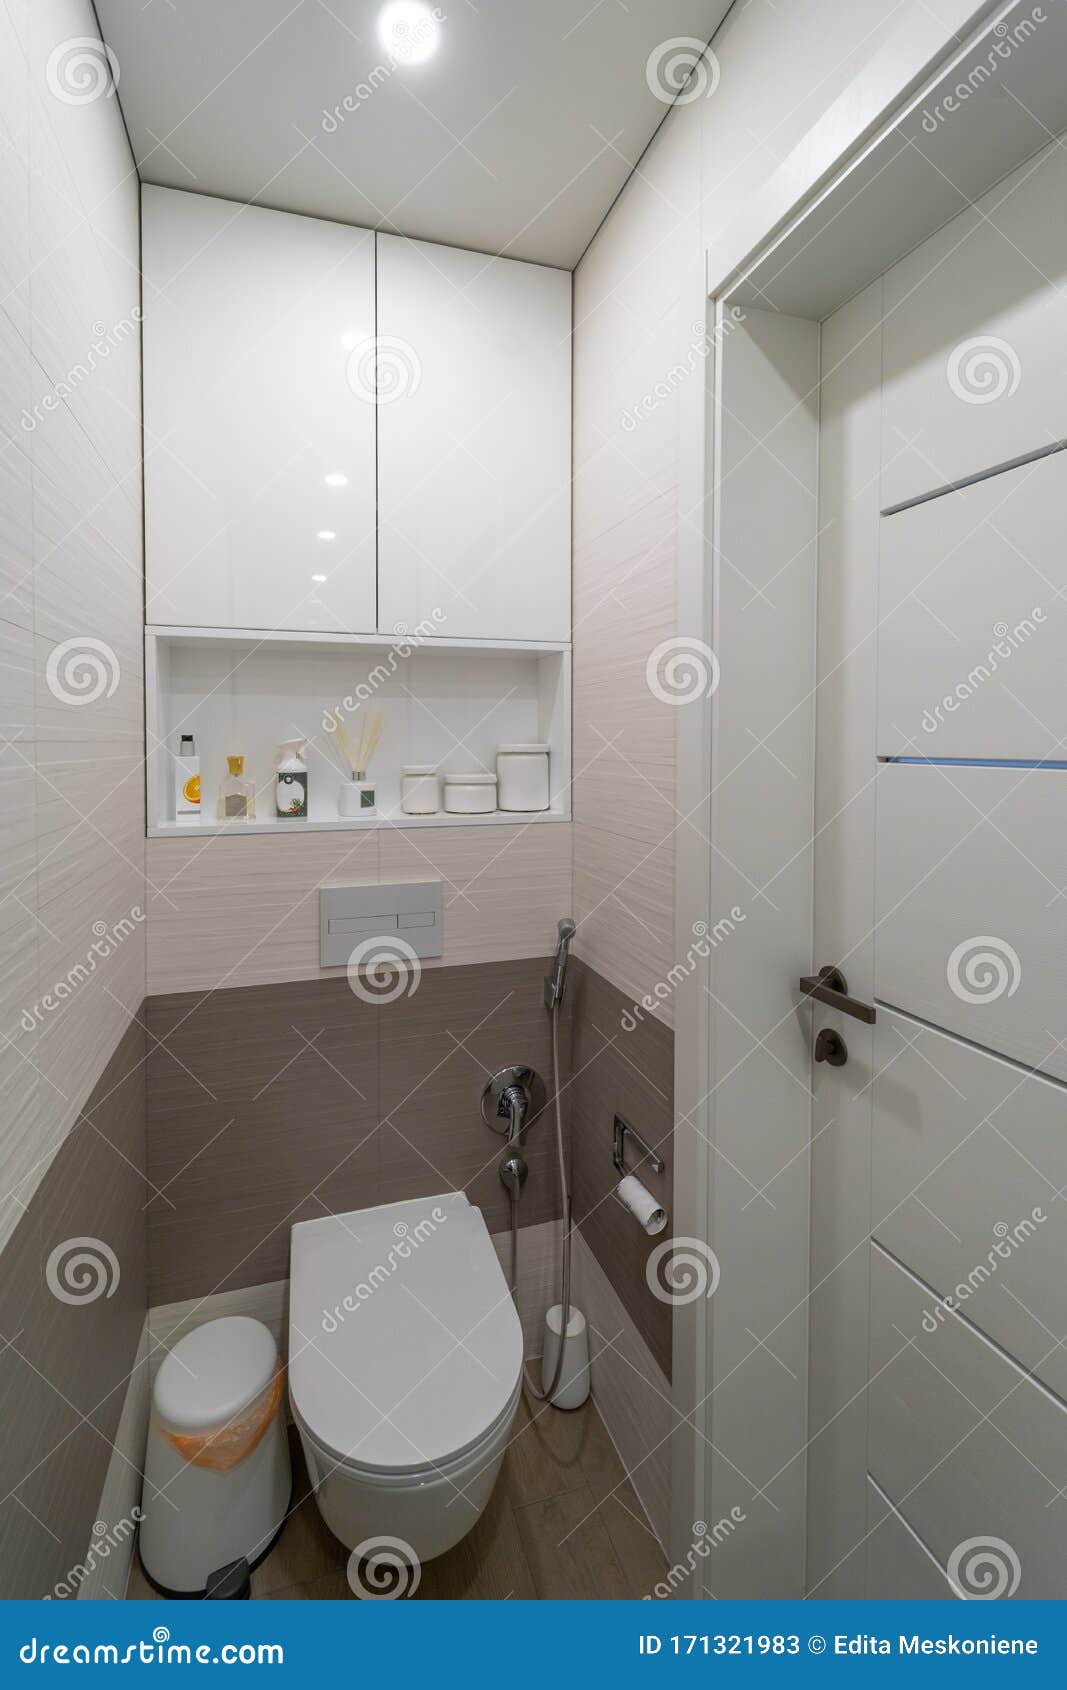 Images restroom Interior Lamp Design